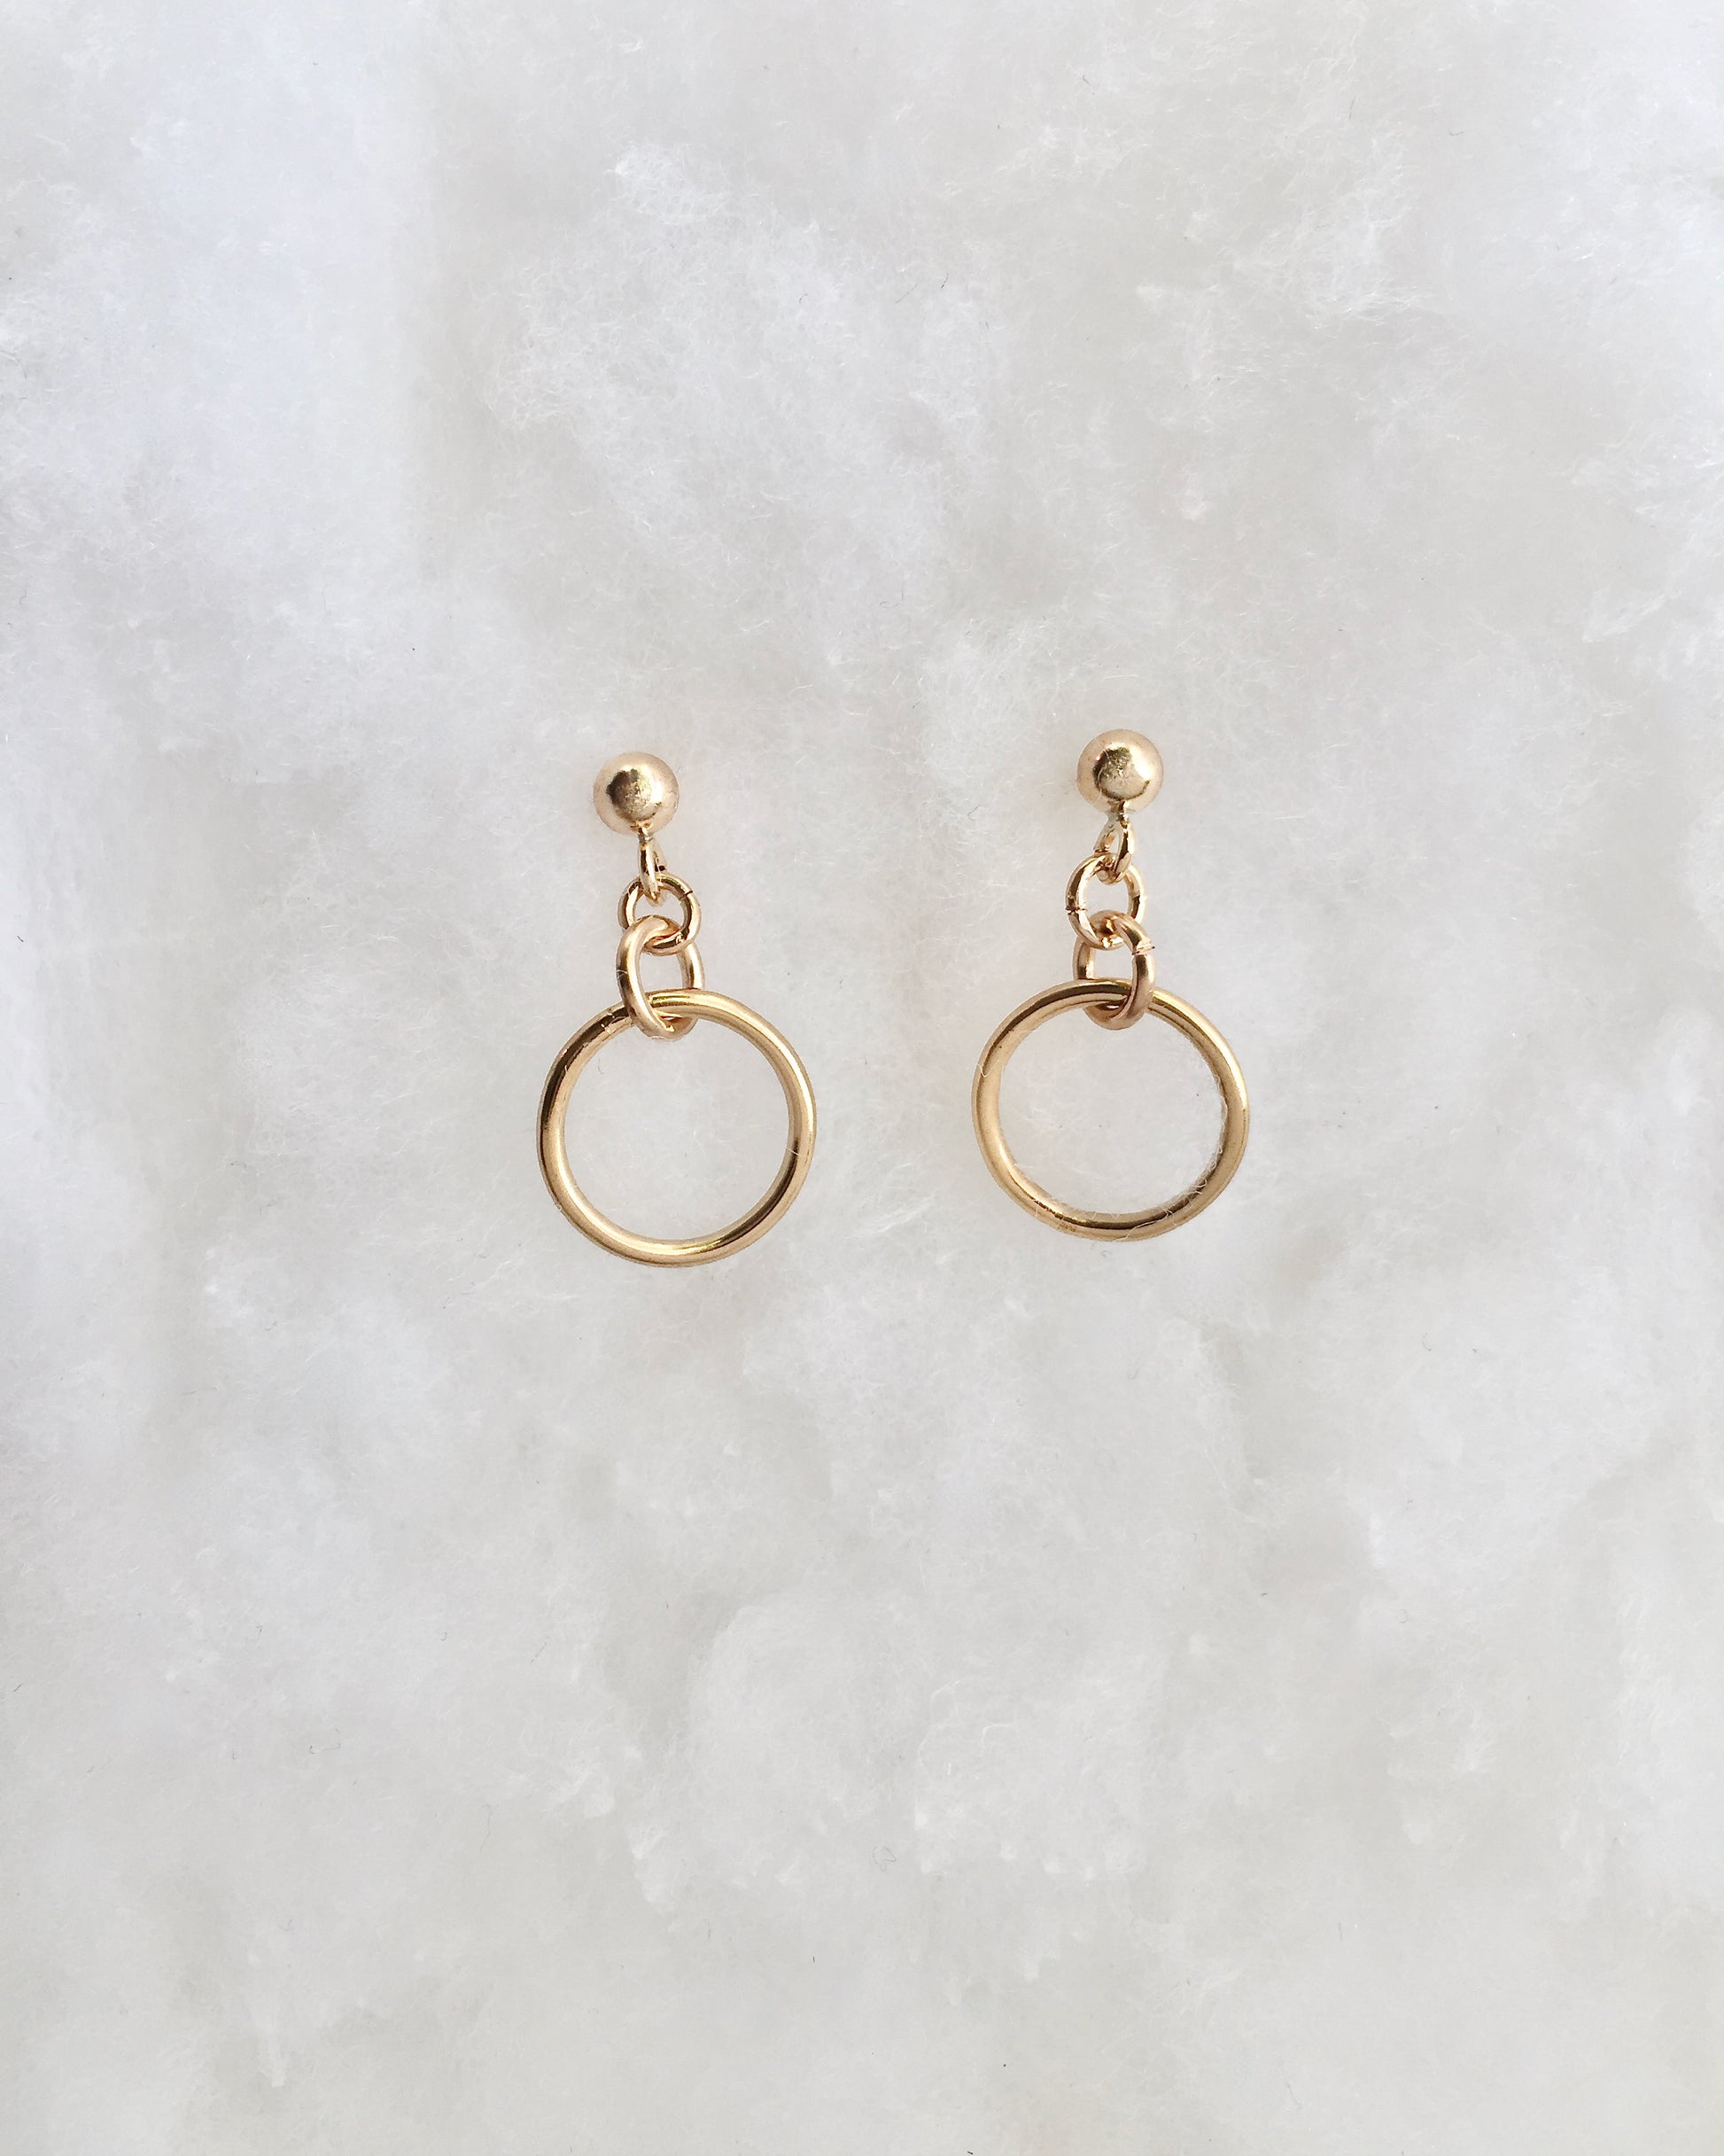 Dainty Drop Earrings in Gold Filled or Sterling Silver | Minimalist Everyday Earrings | IB Jewelry